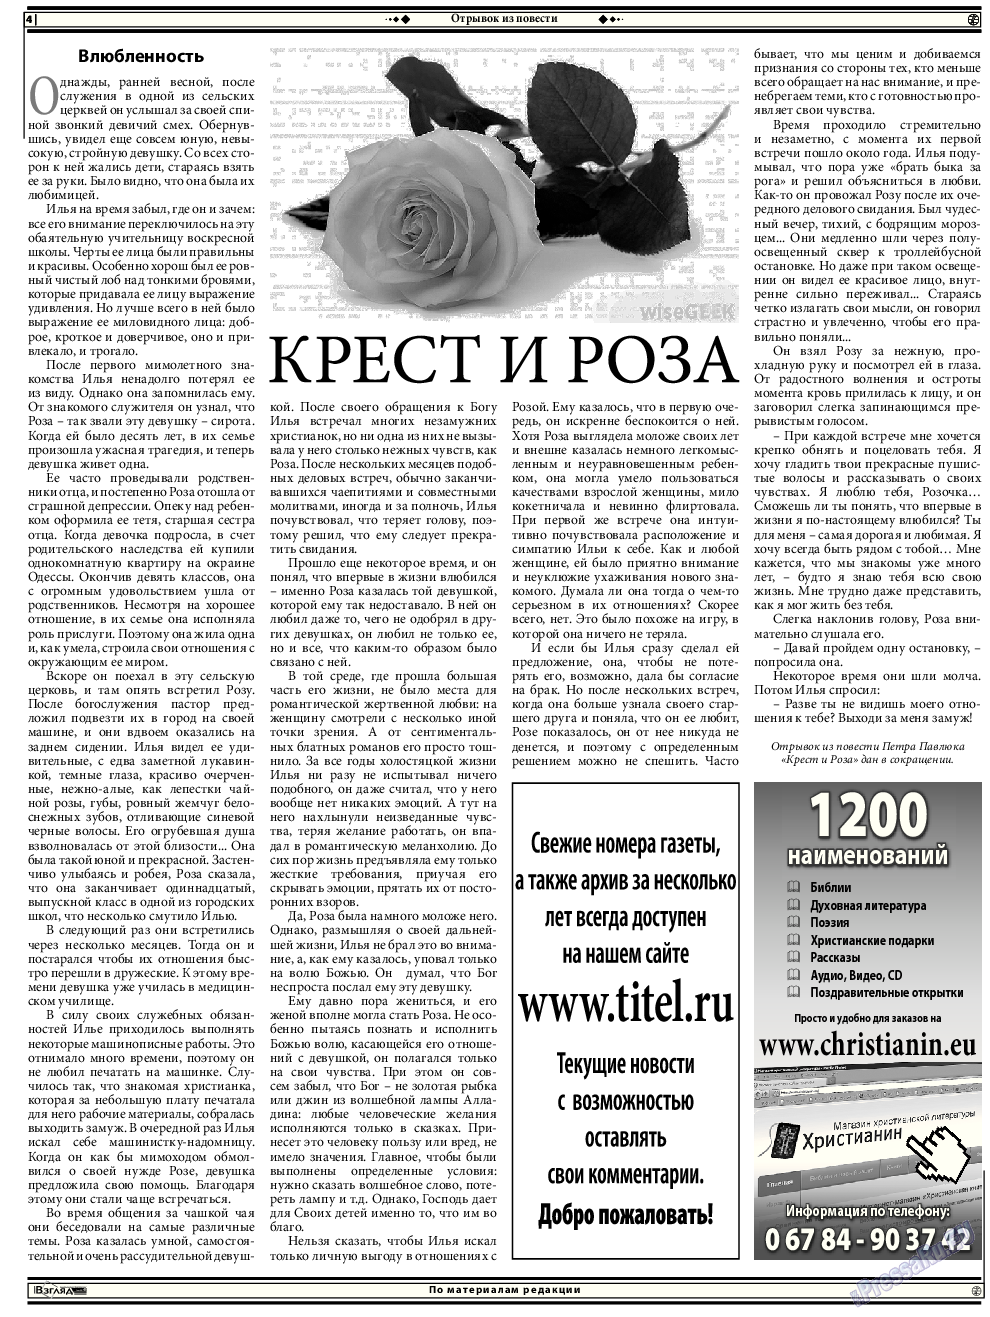 Христианская газета, газета. 2015 №12 стр.18